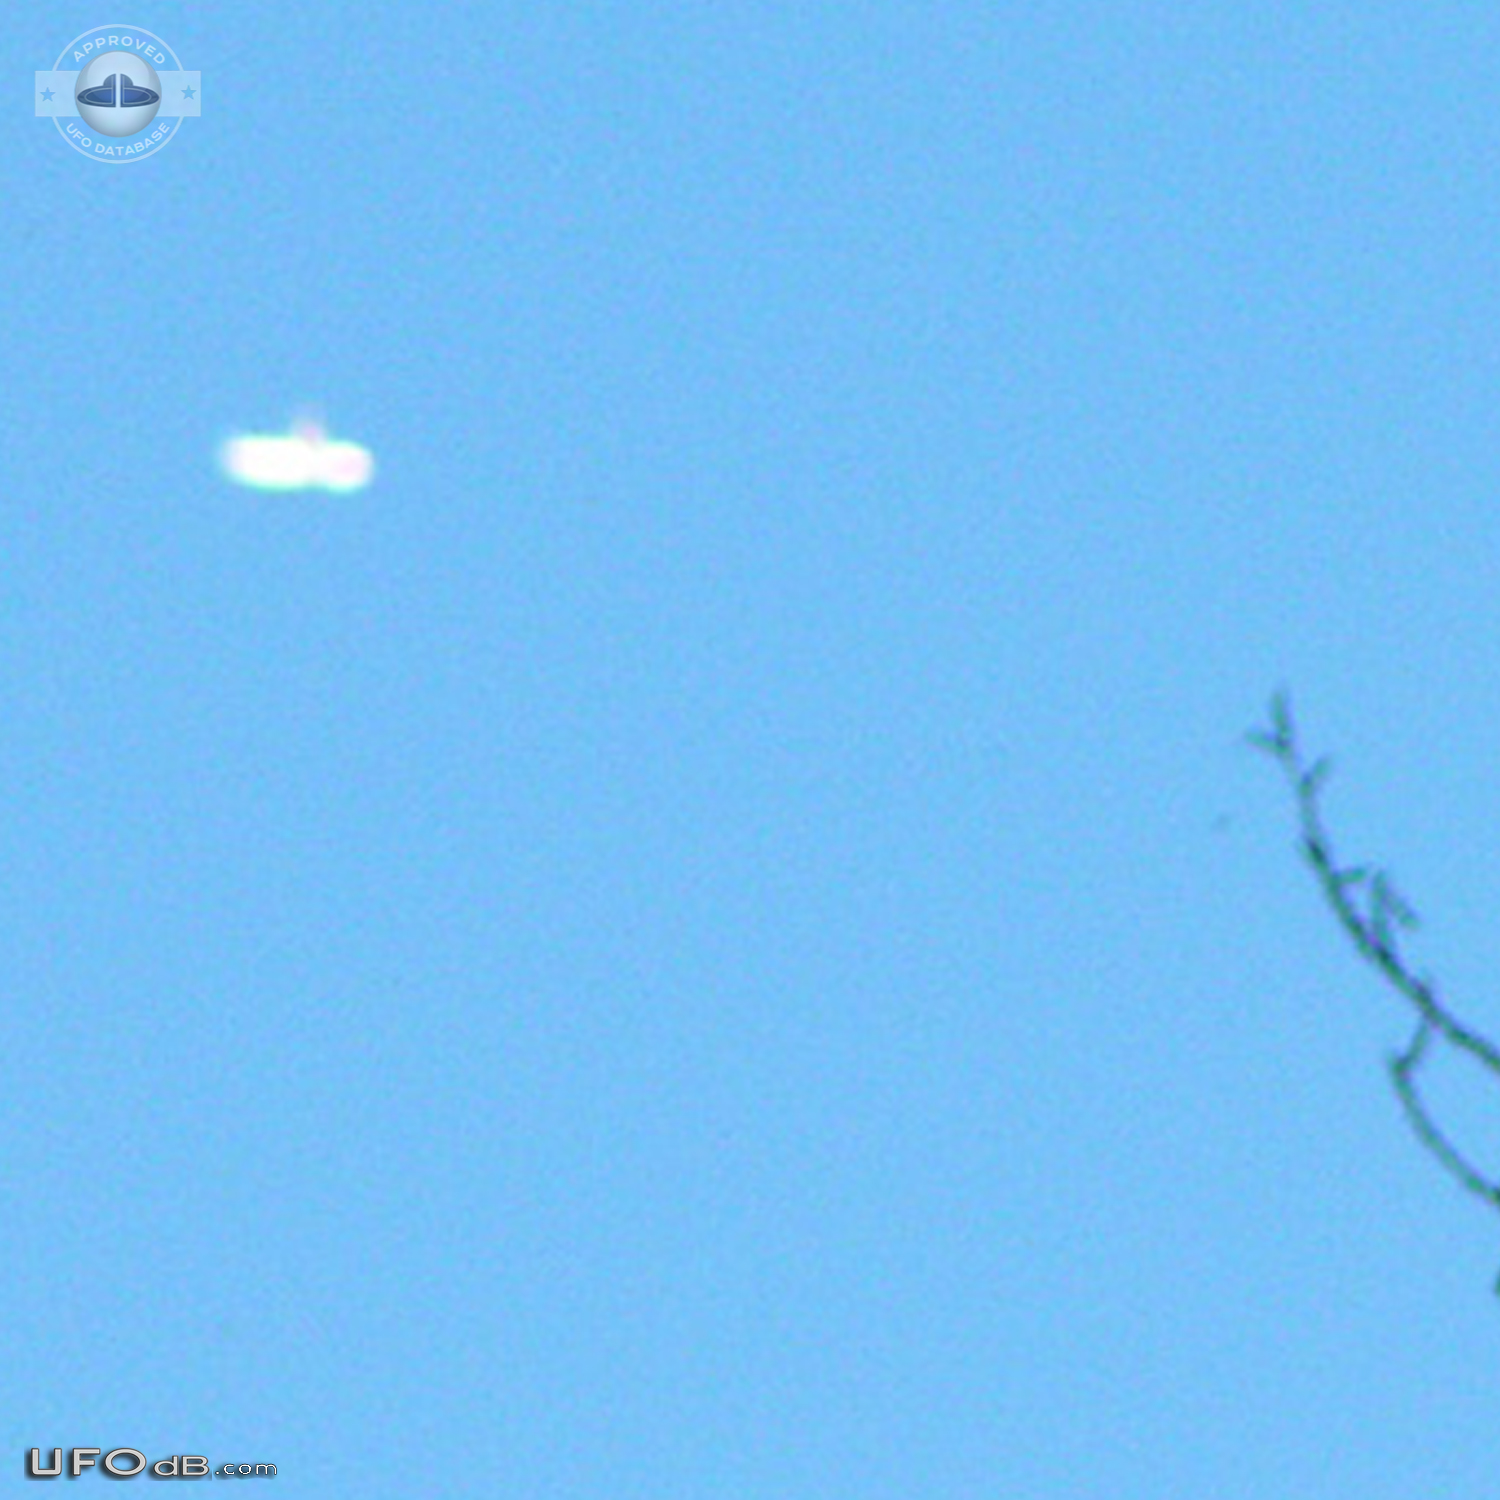 Donut UFO seen over the farm in Alberta Canada in 2004 UFO Picture #835-3